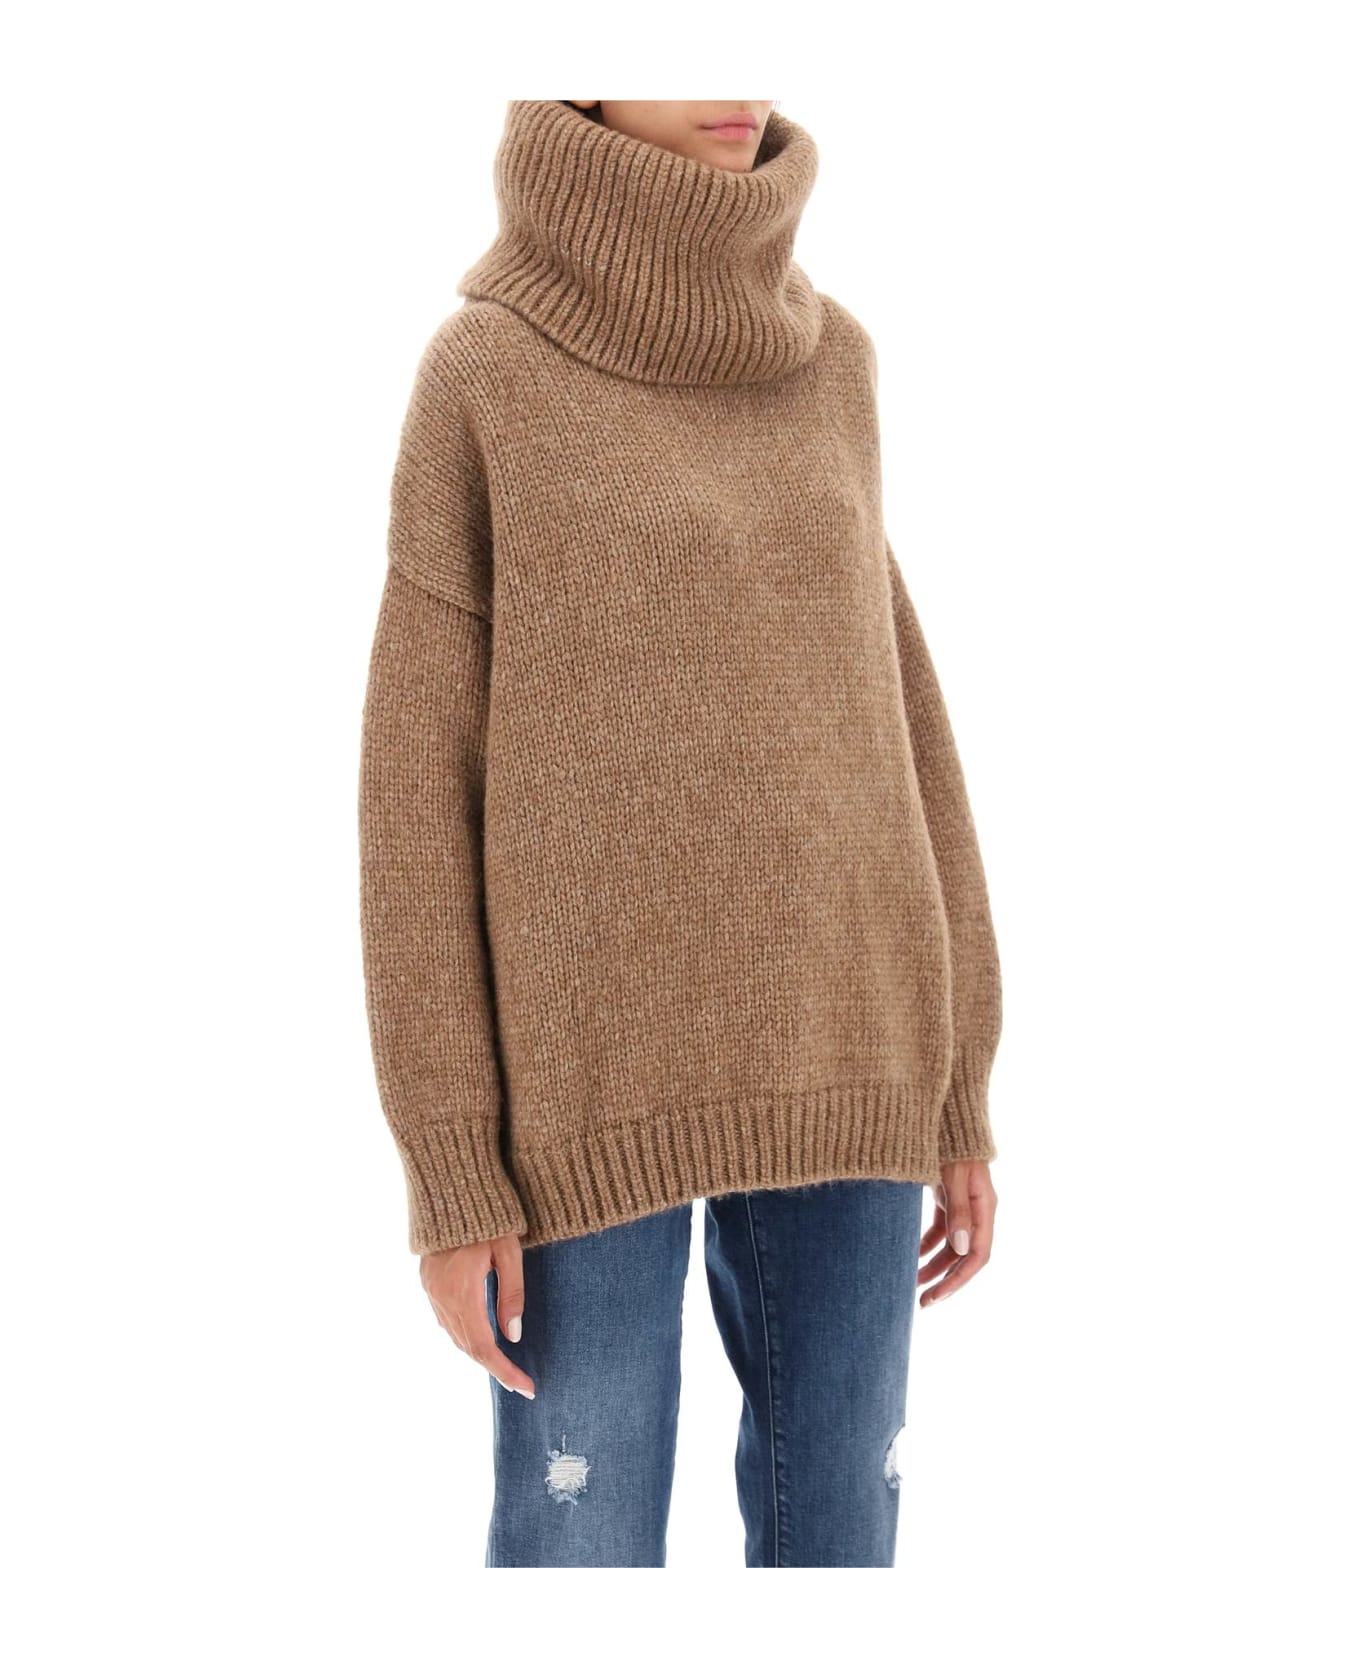 Dolce & Gabbana Llama Sweater - MARRONE 2 (Brown) ニットウェア